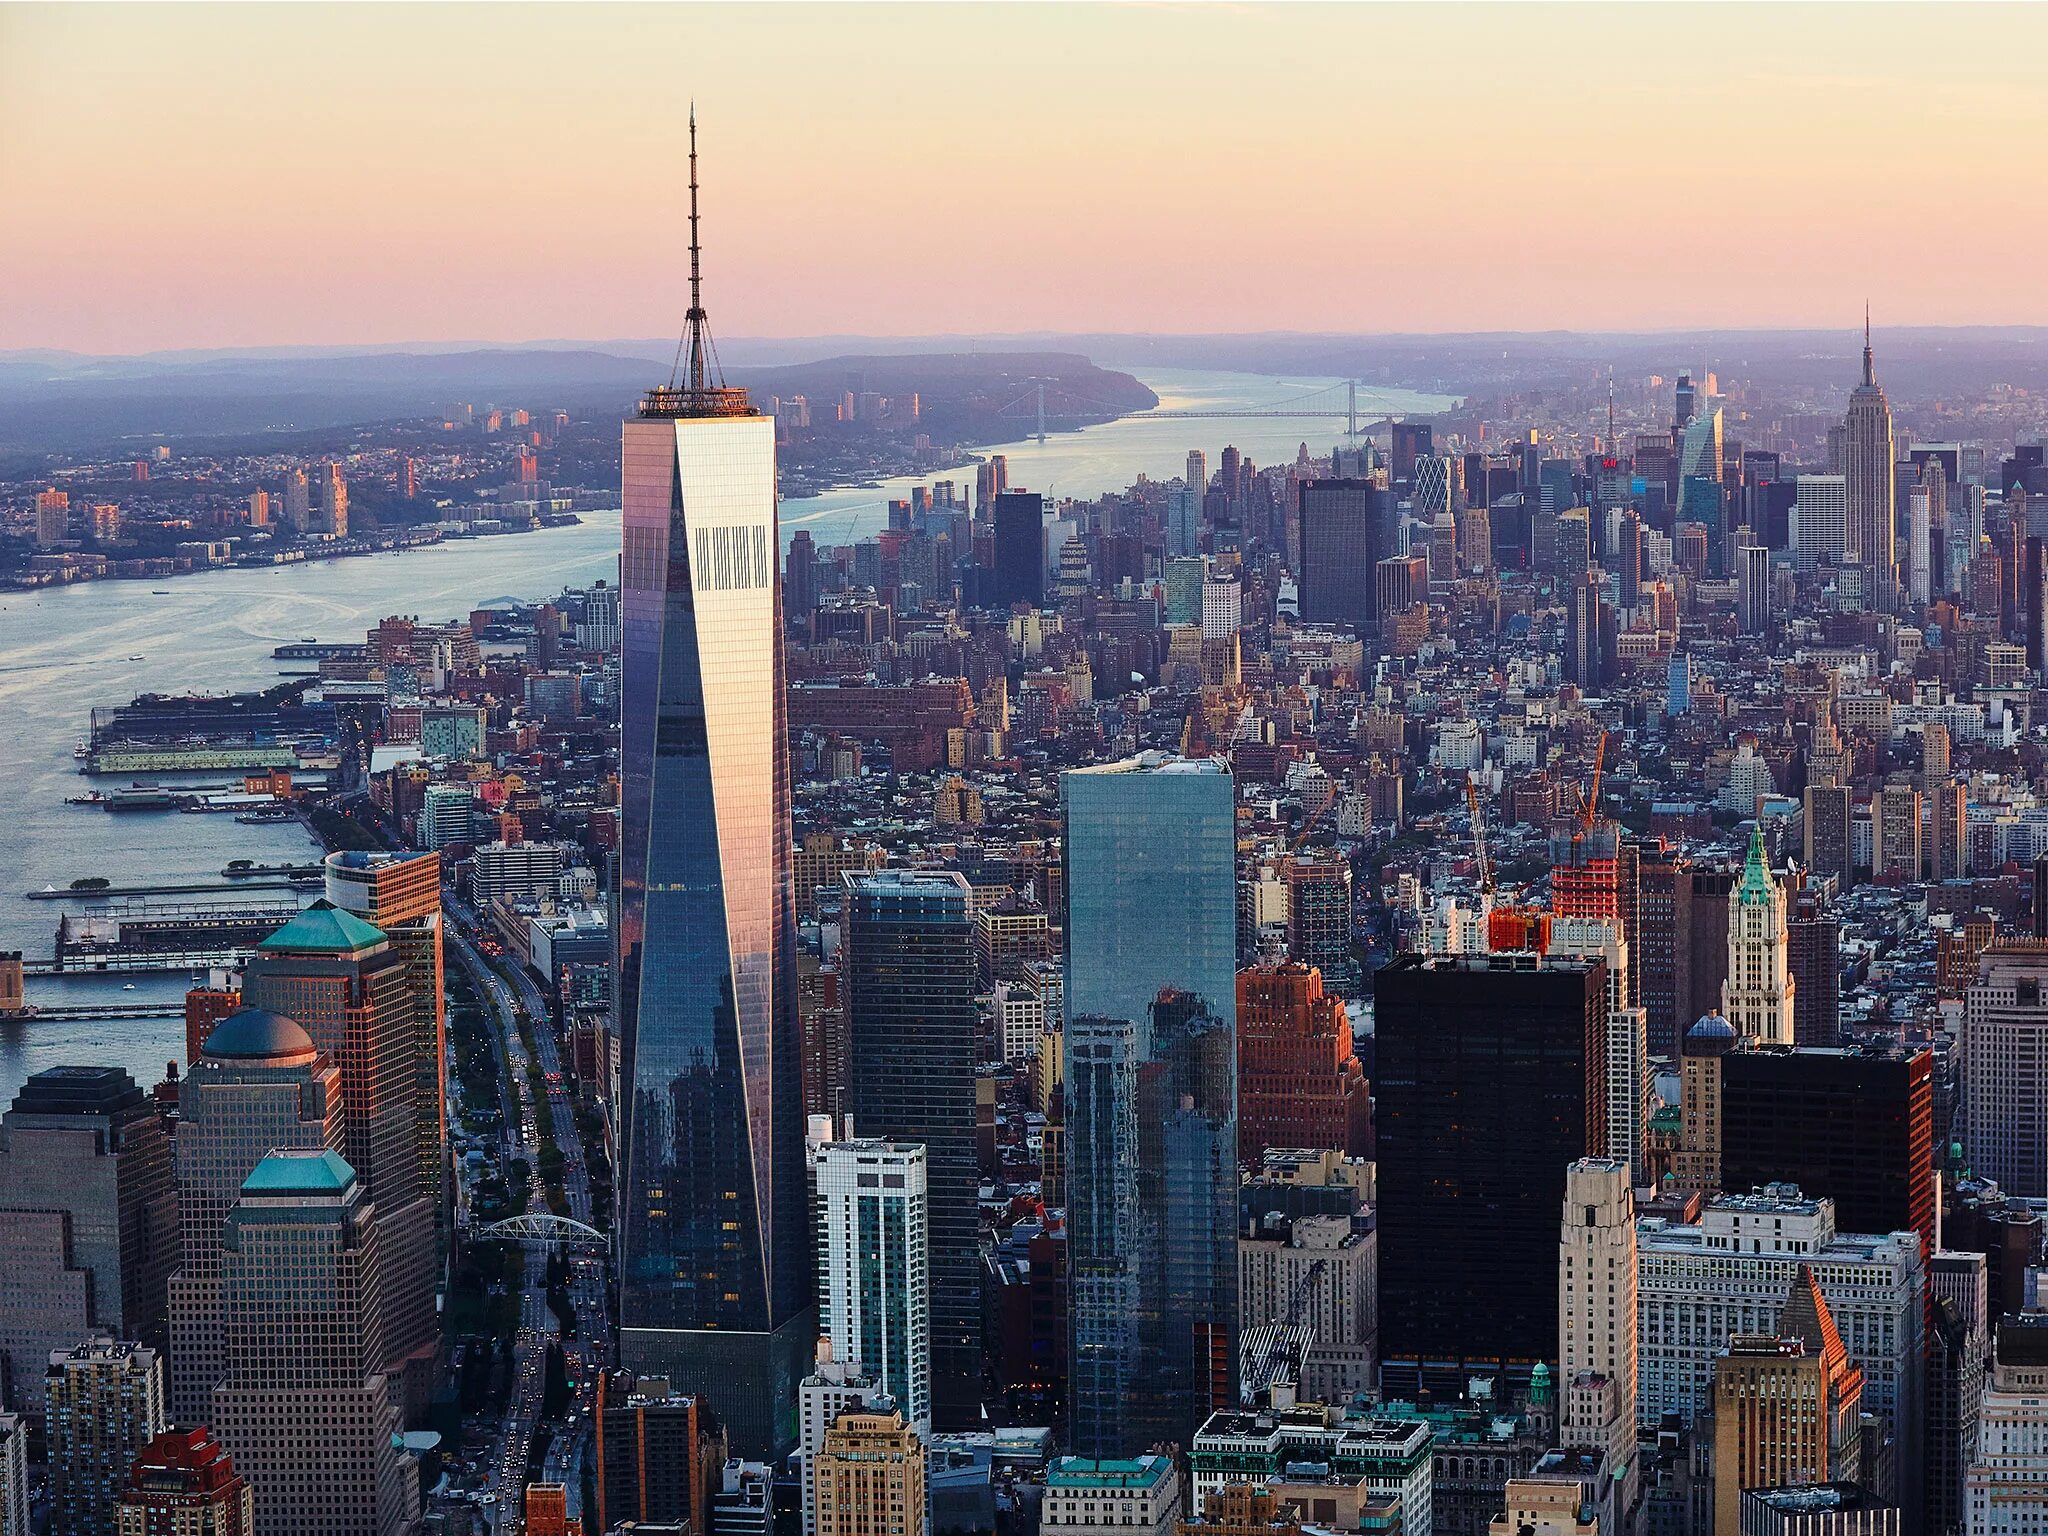 ВТЦ 1 башня свободы. Всемирный торговый центр 1 Нью-Йорк. ВТЦ Нью-Йорк 2020. Нью-Йорк Сити WTC.